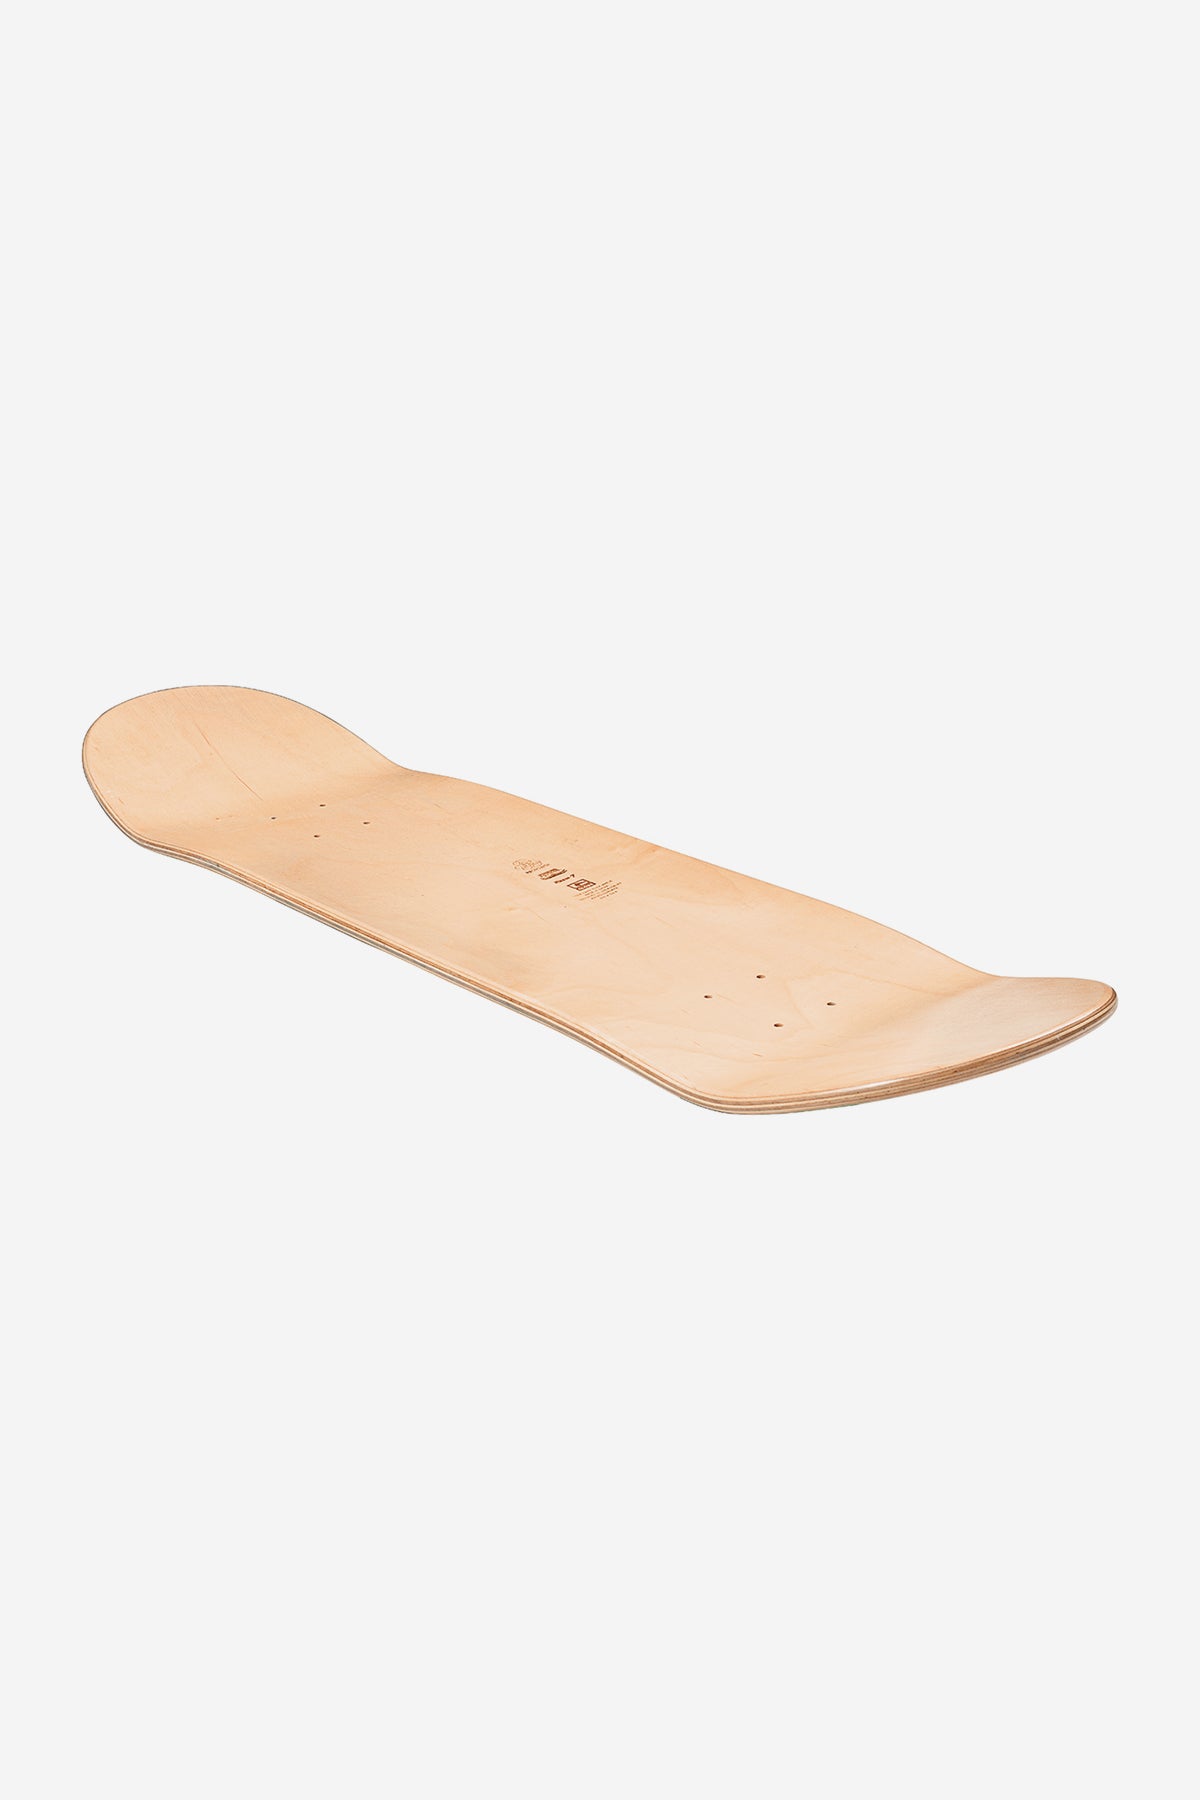 Globe - Goodstock - Off White- 8.0" Skateboard Deck